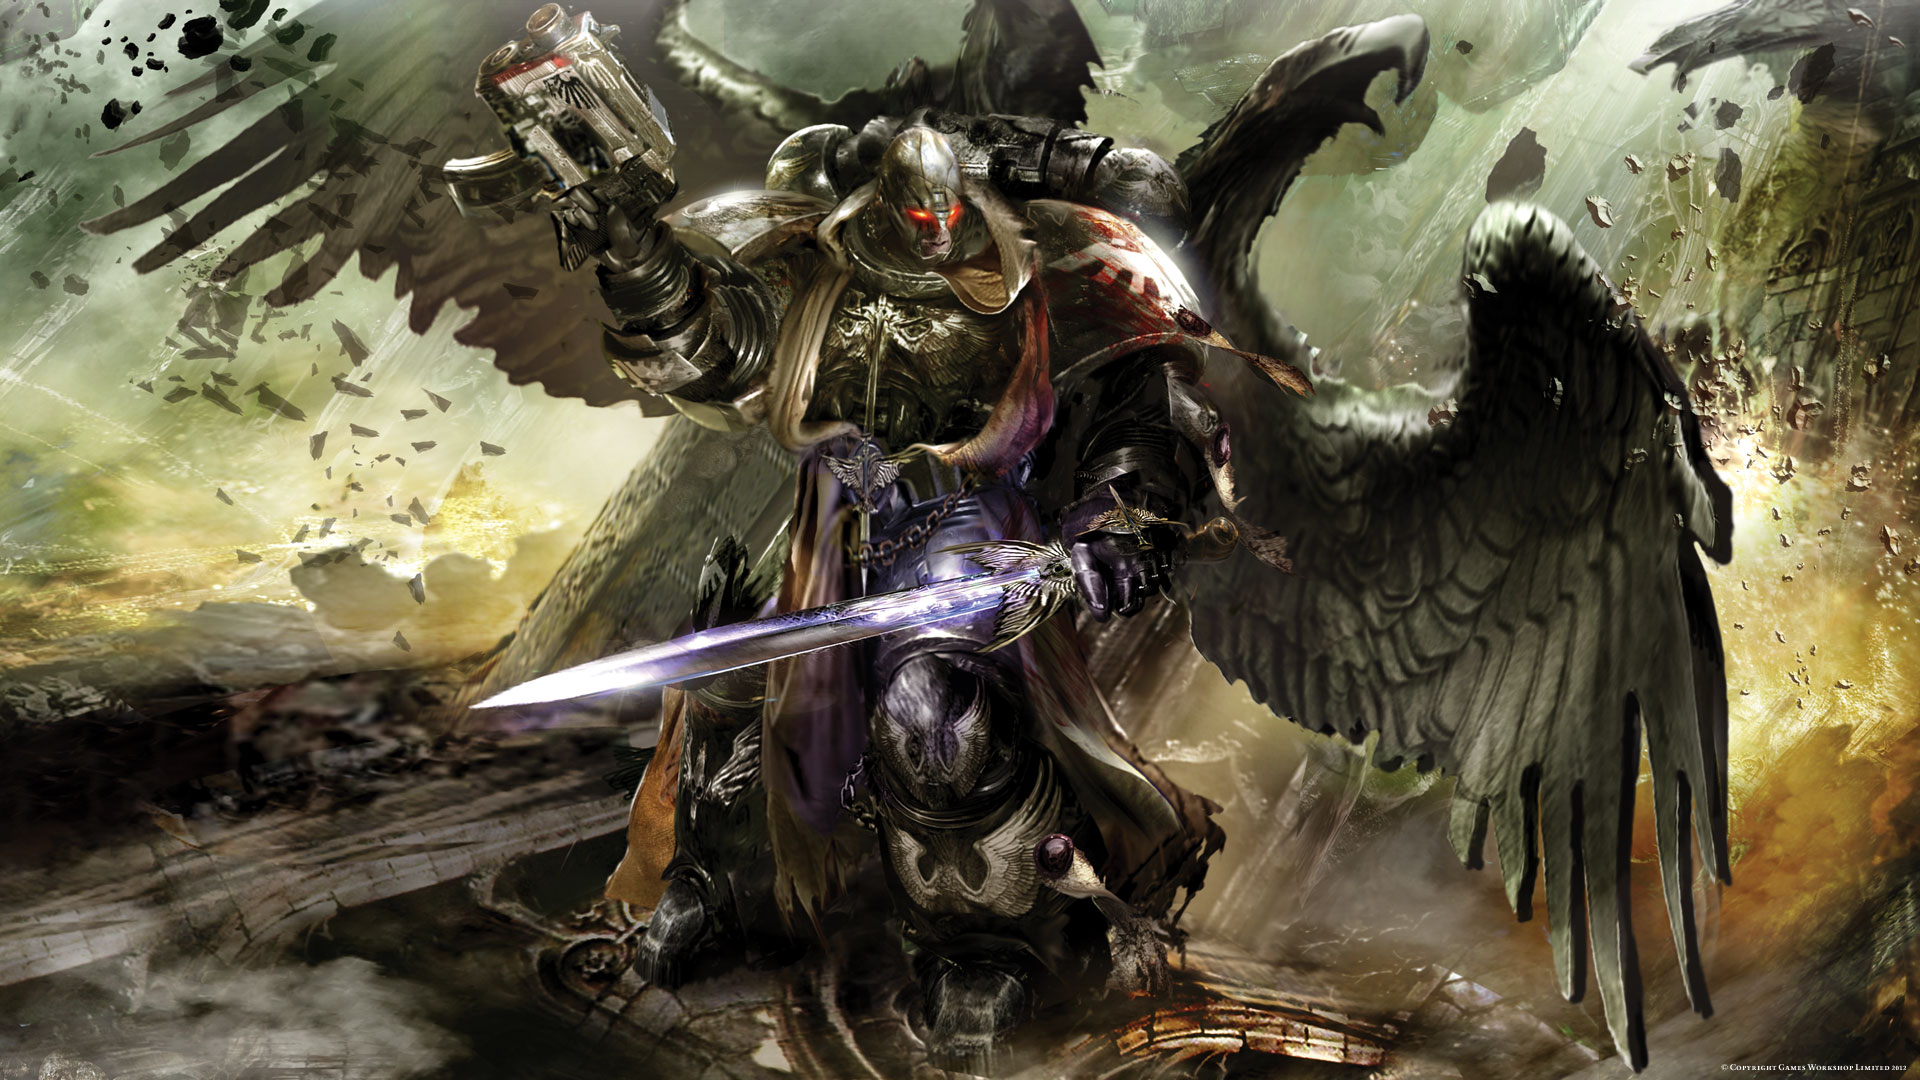 warhammer 40k fond d'écran hd,jeu d'aventure d'action,démon,oeuvre de cg,personnage fictif,mythologie